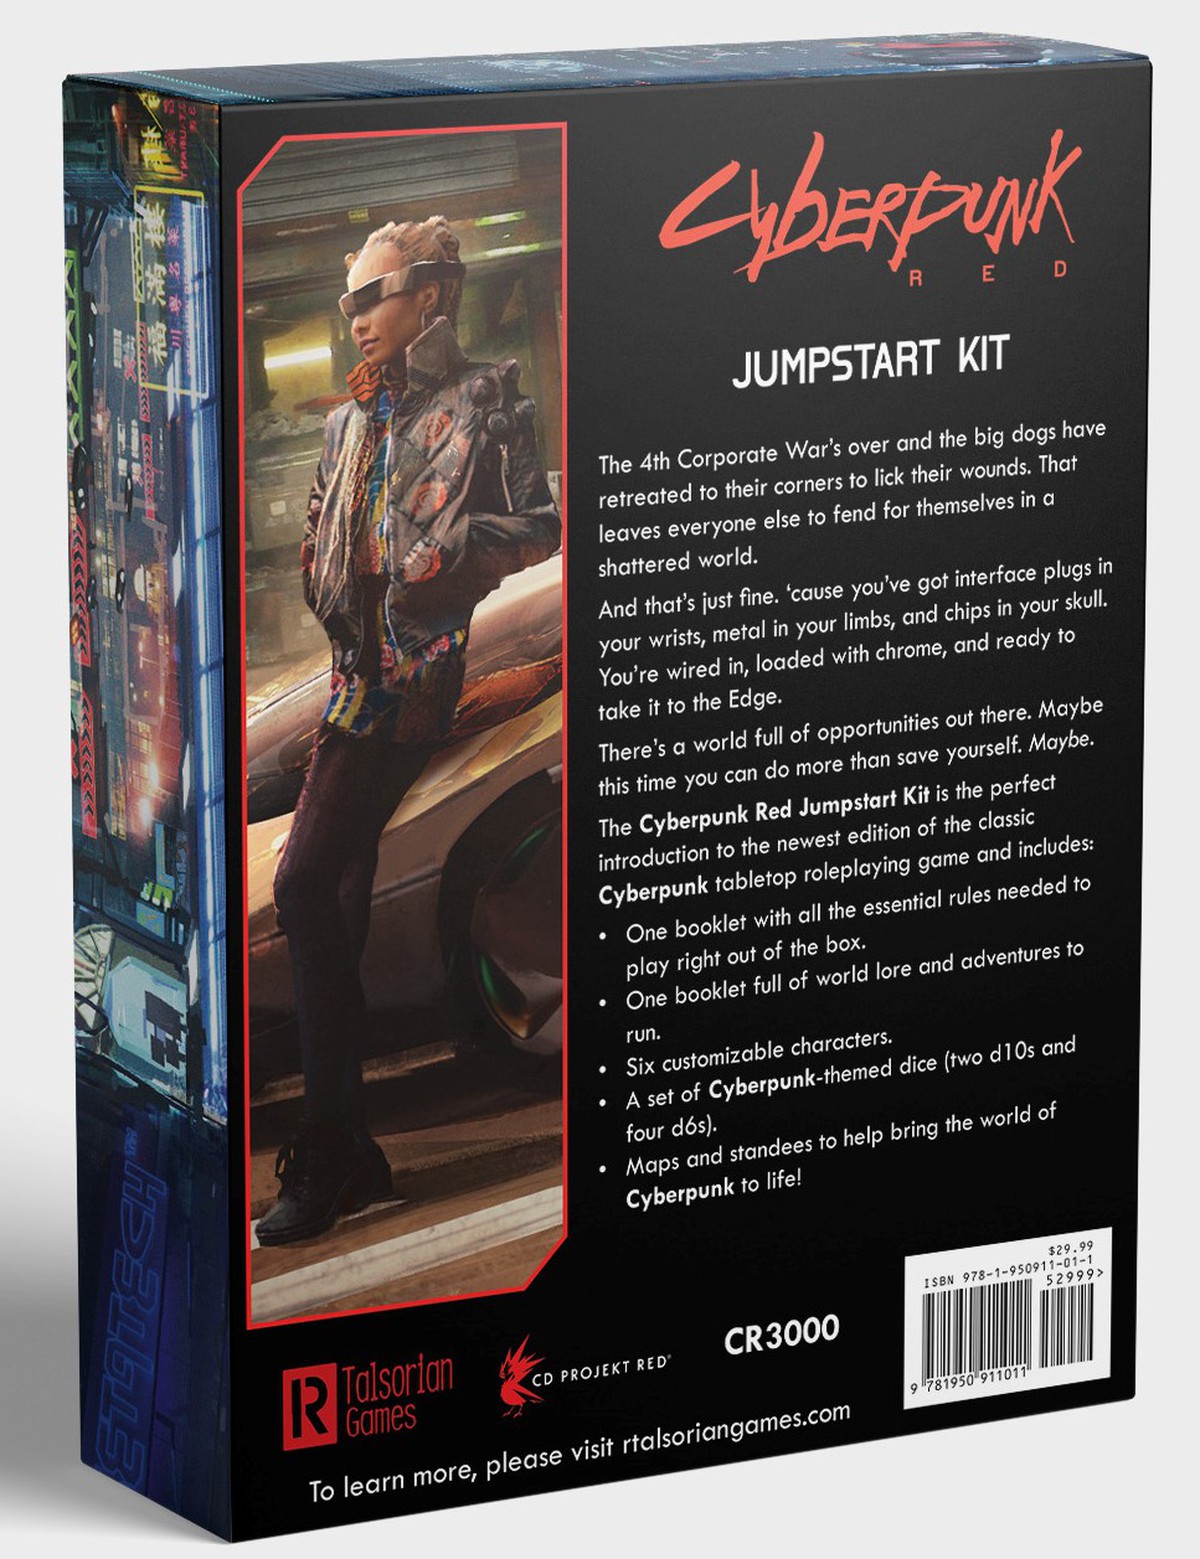 Cyberpunk red настольная игра купить на русском фото 21